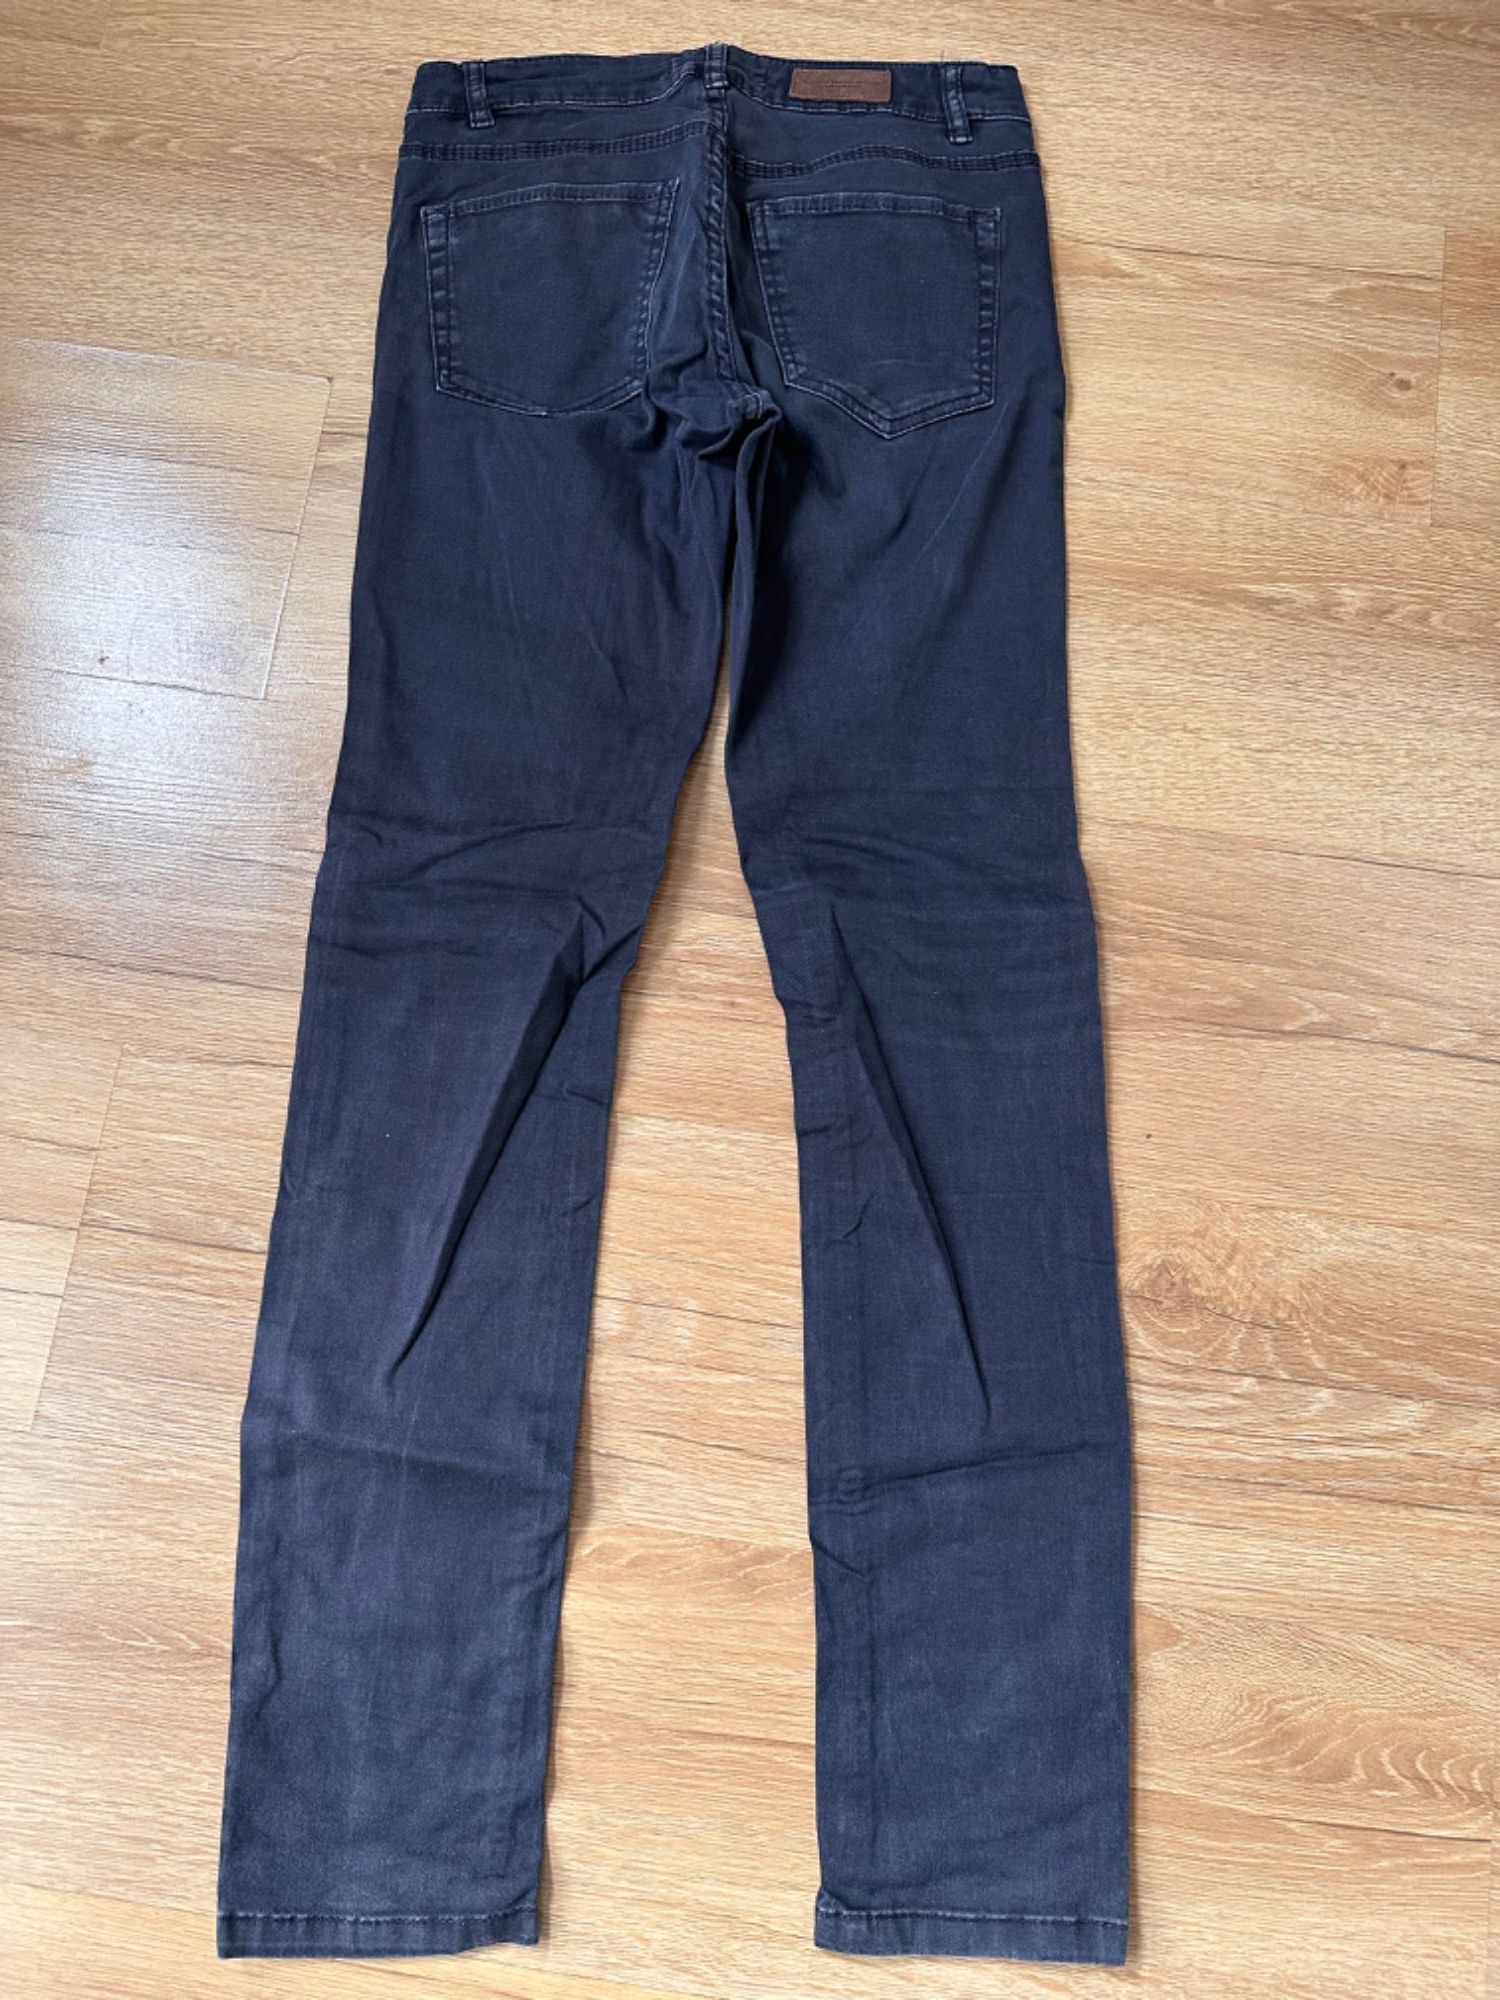 Spodnie Dżinsy proste nogawki H&M 36